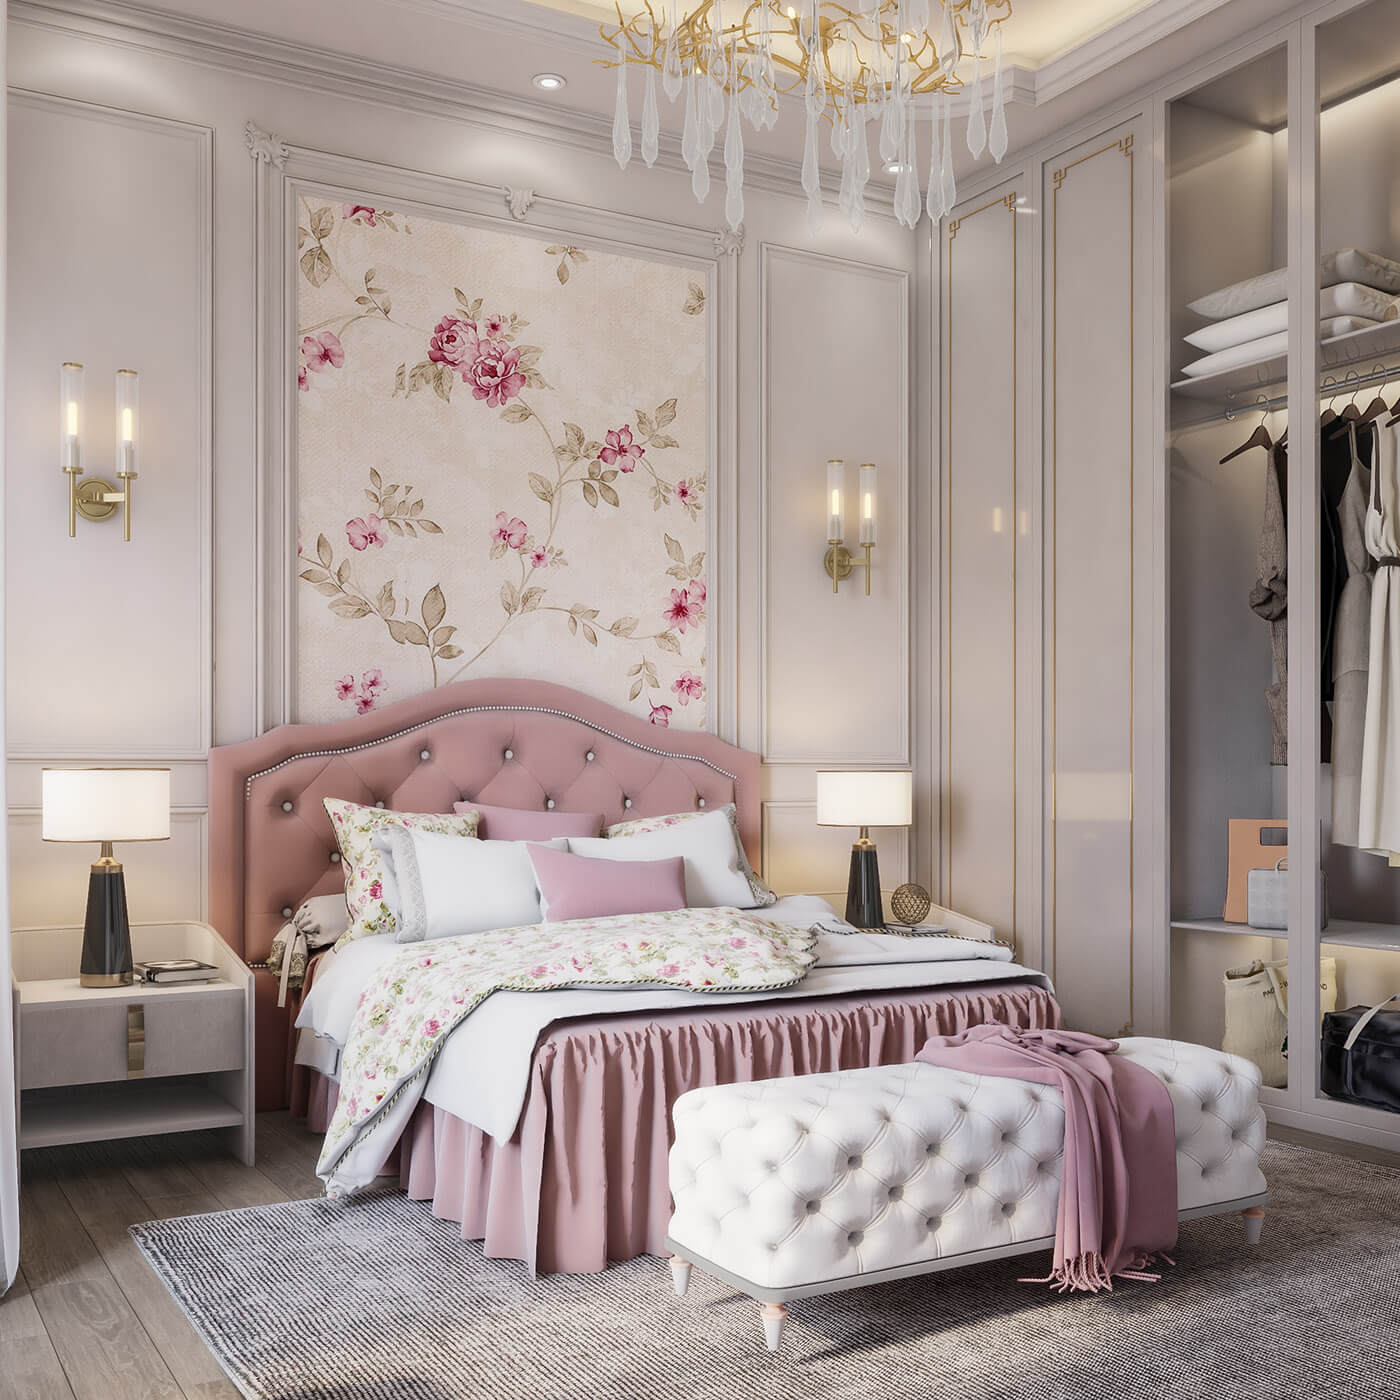 Thiết kế nội thất phòng ngủ cho bé 05 với sắc hồng ngọt ngào